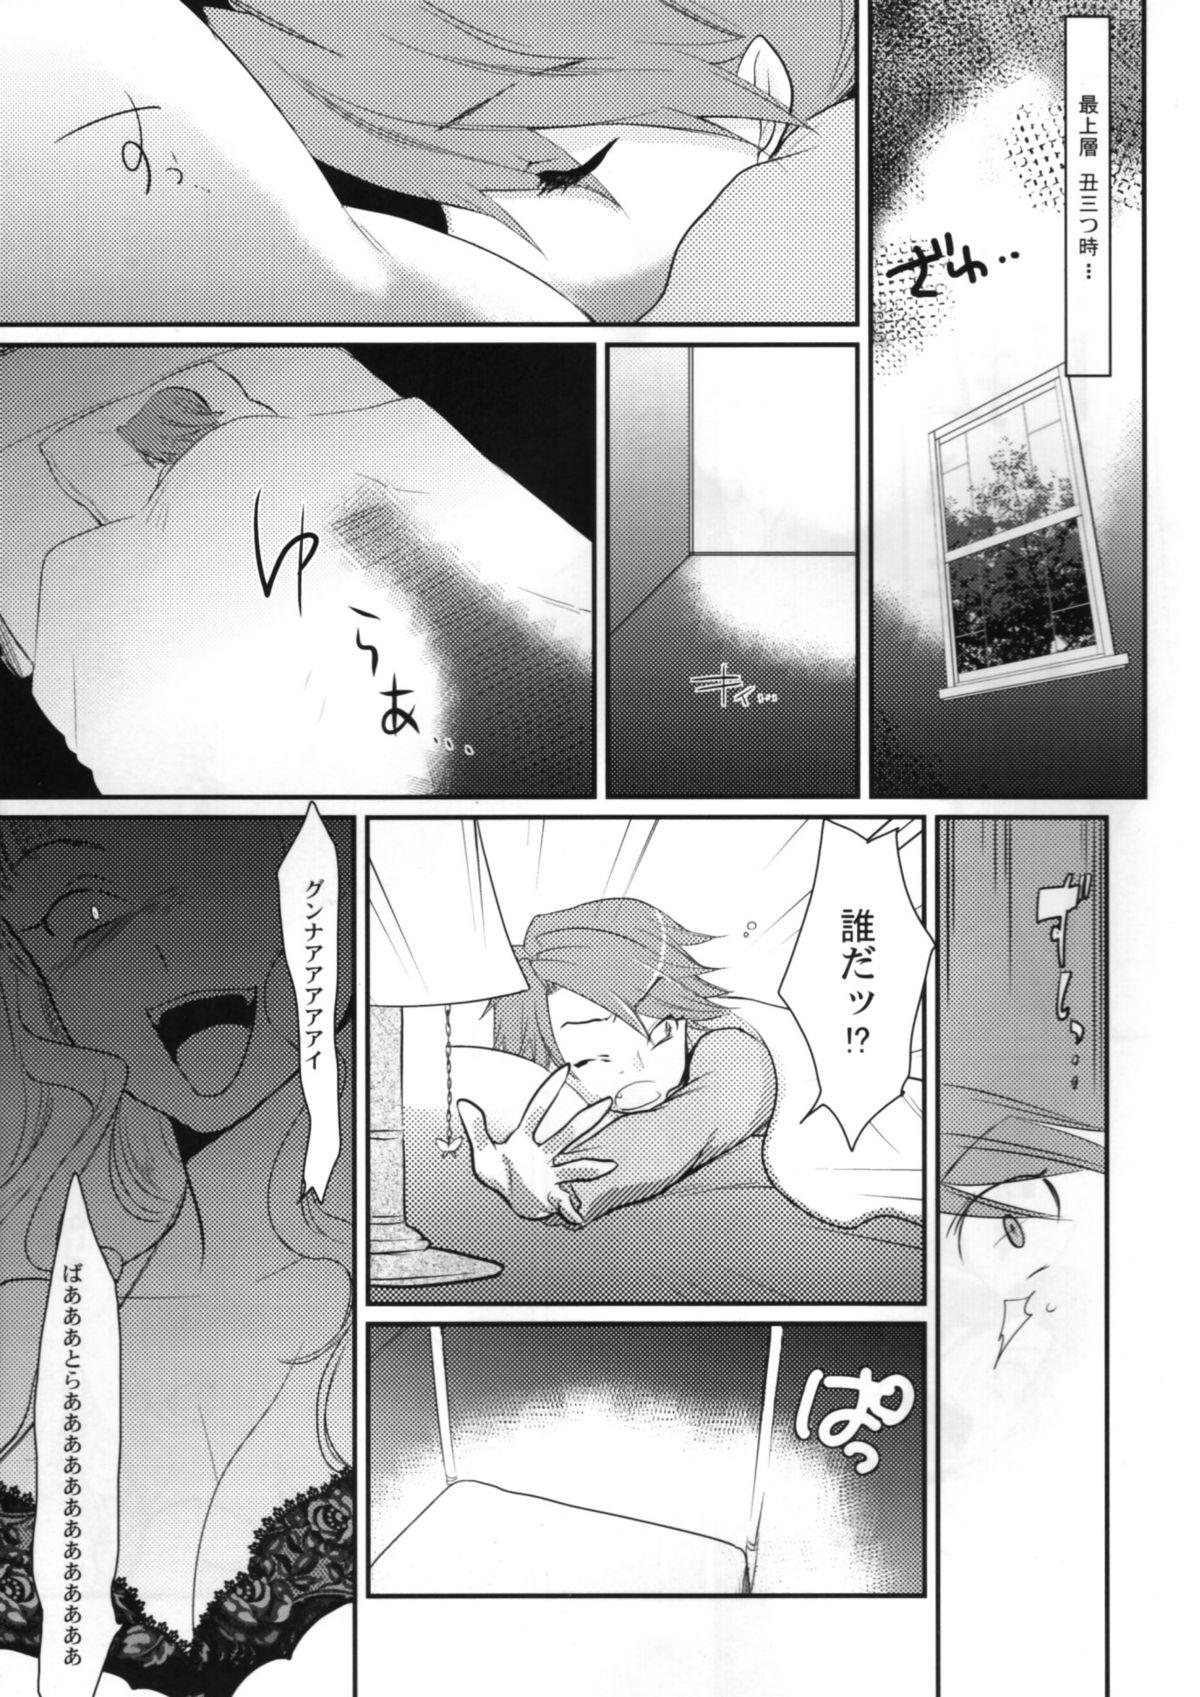 Camgirls BeaBato! - Umineko no naku koro ni Hardsex - Page 8